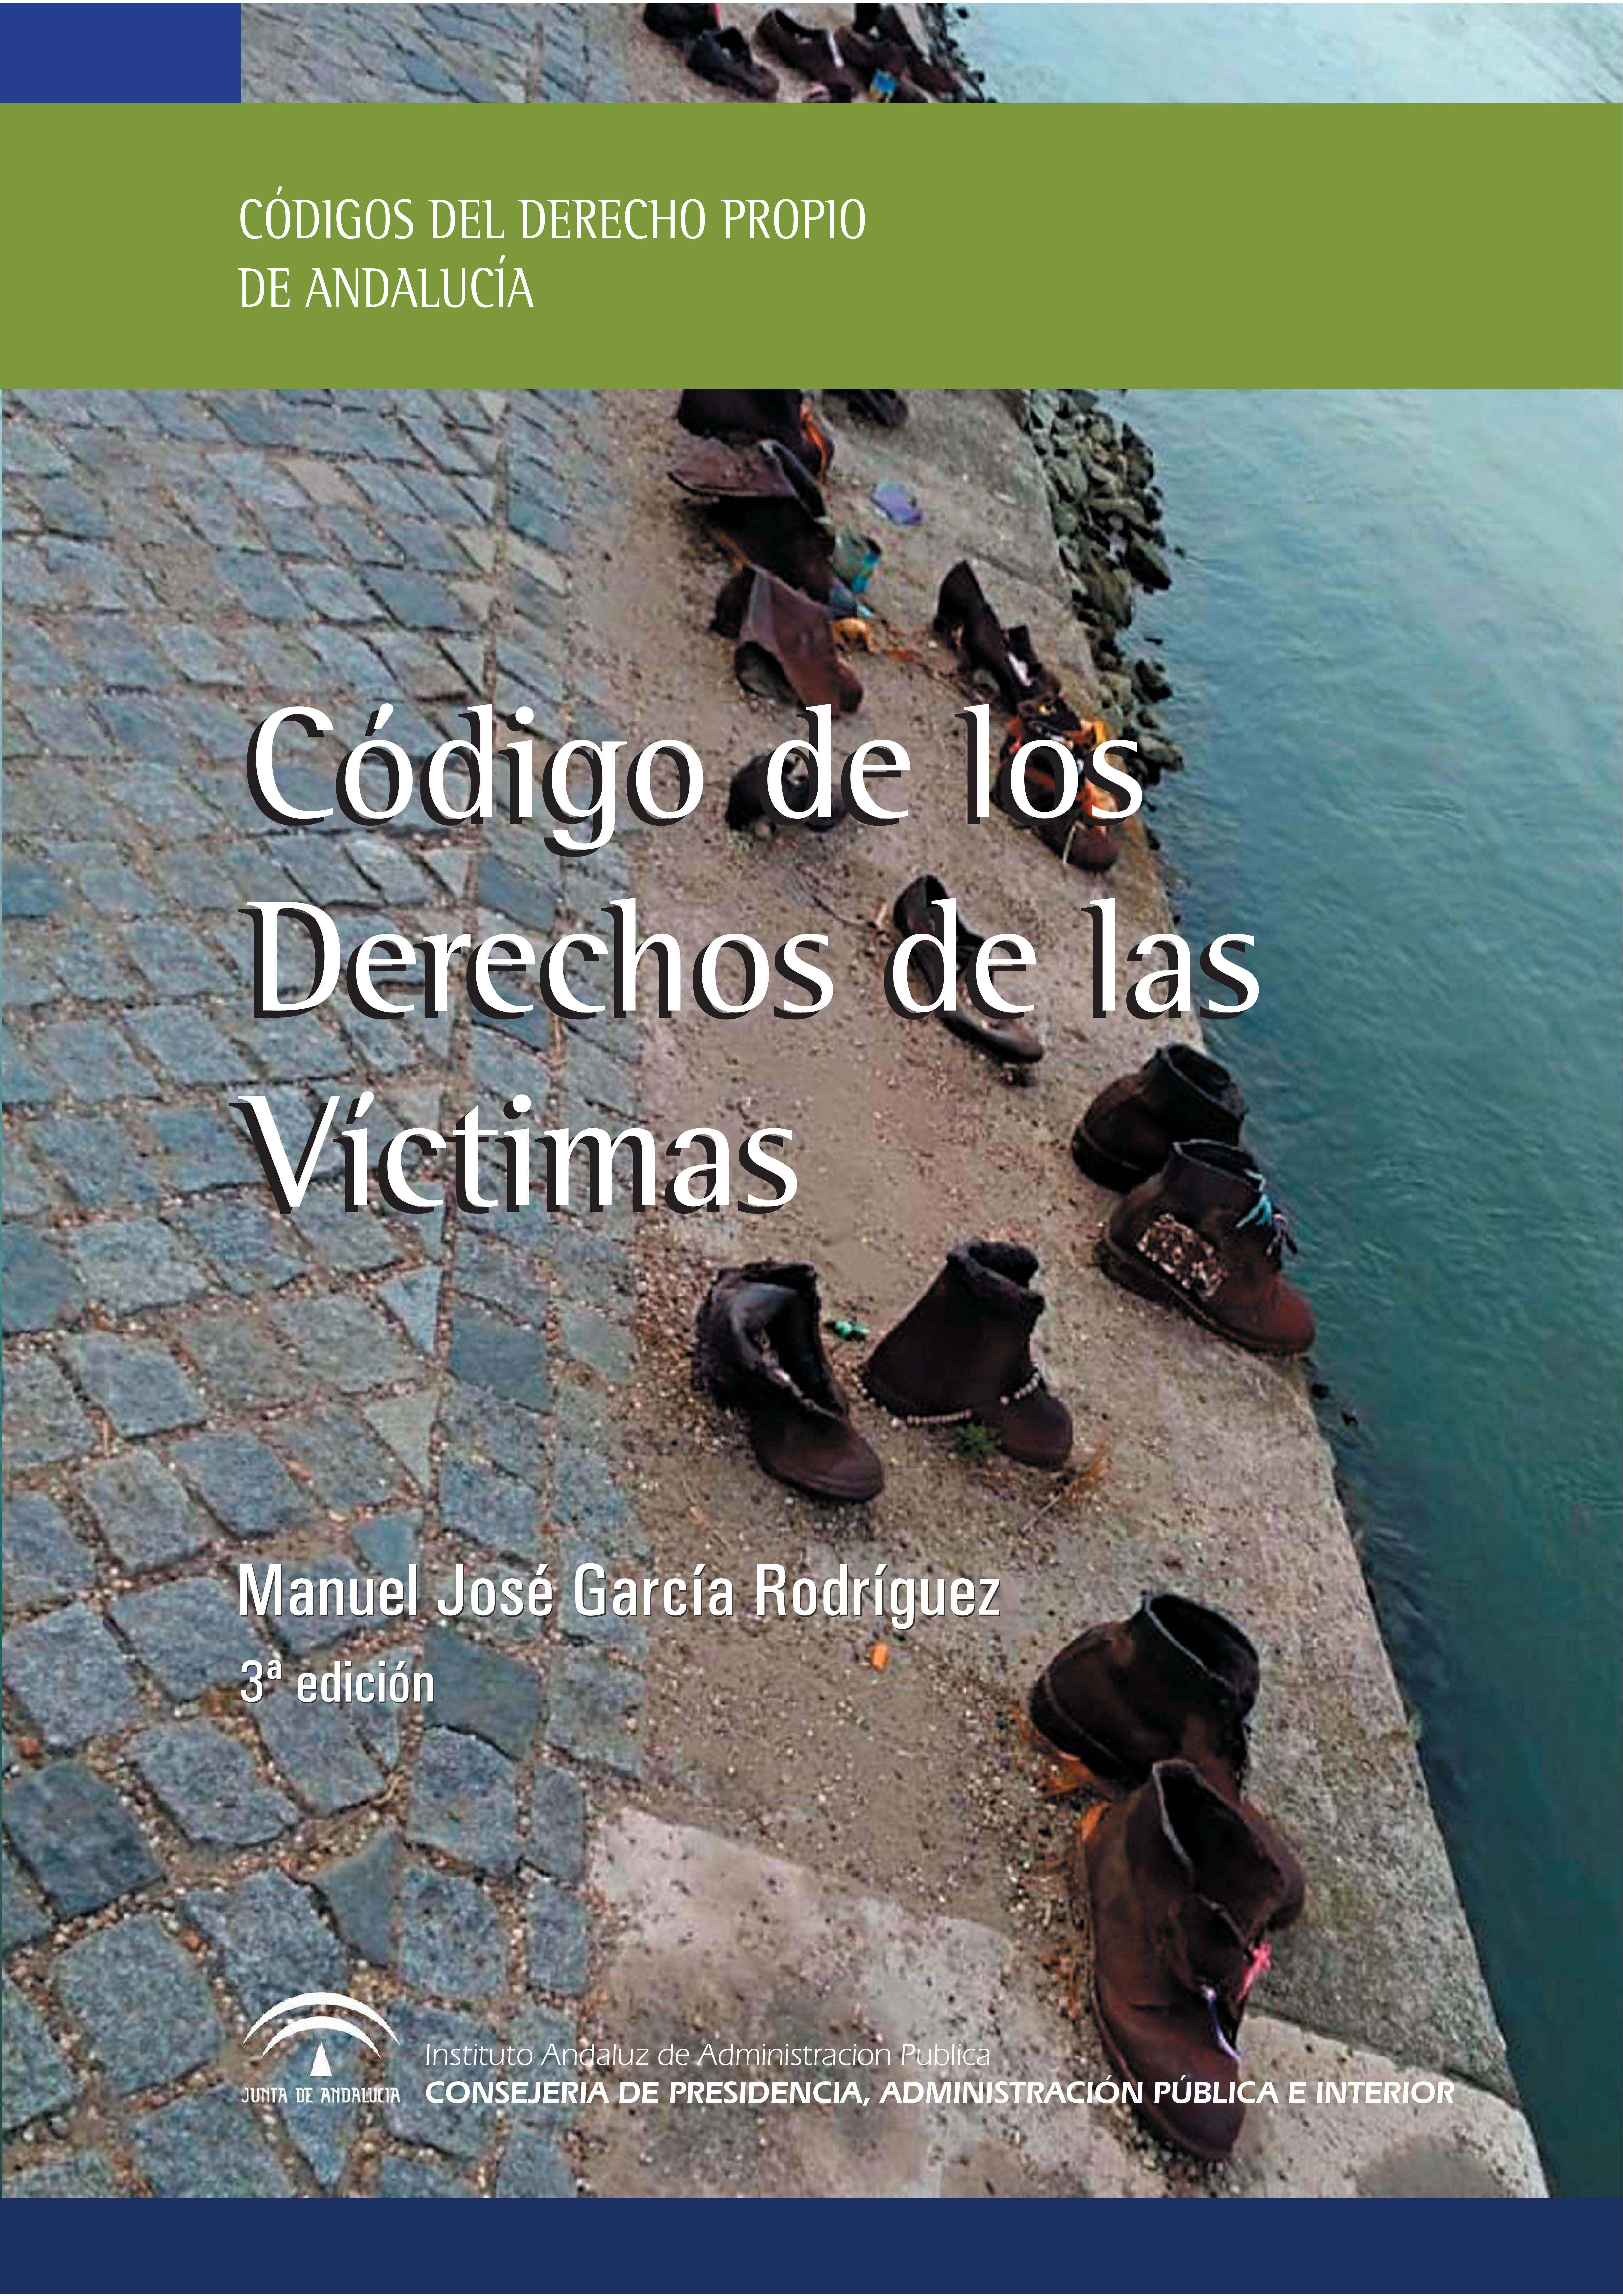 Portada de la publicación "Código de los derechos de las víctimas en Andalucía"